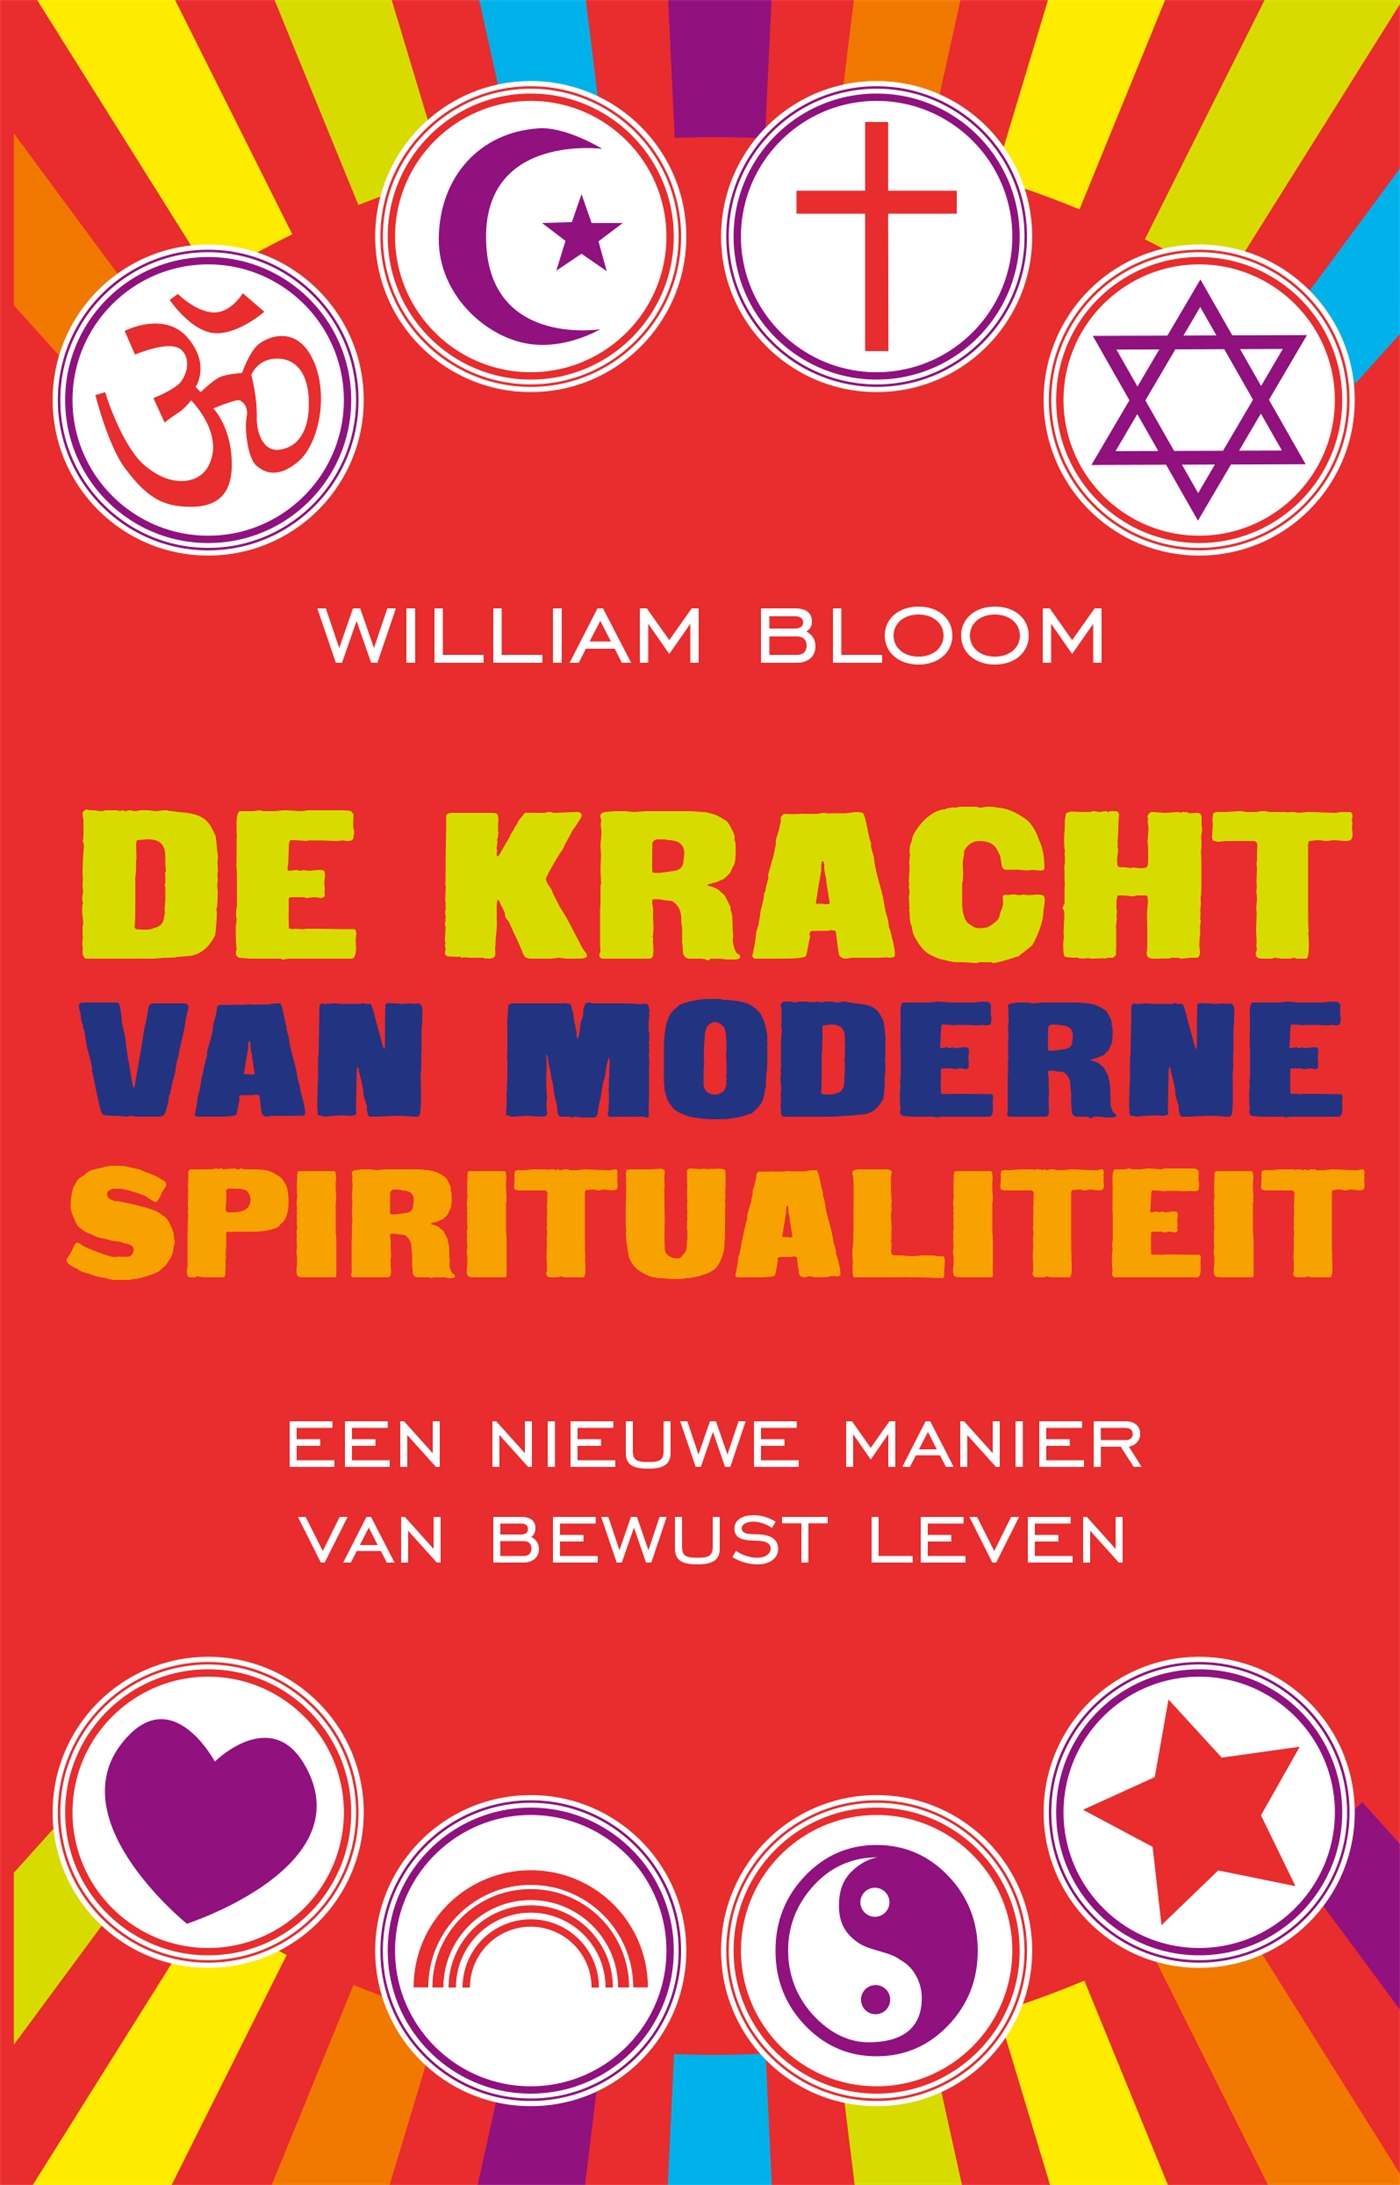 De kracht van moderne spiritualiteit (Ebook)